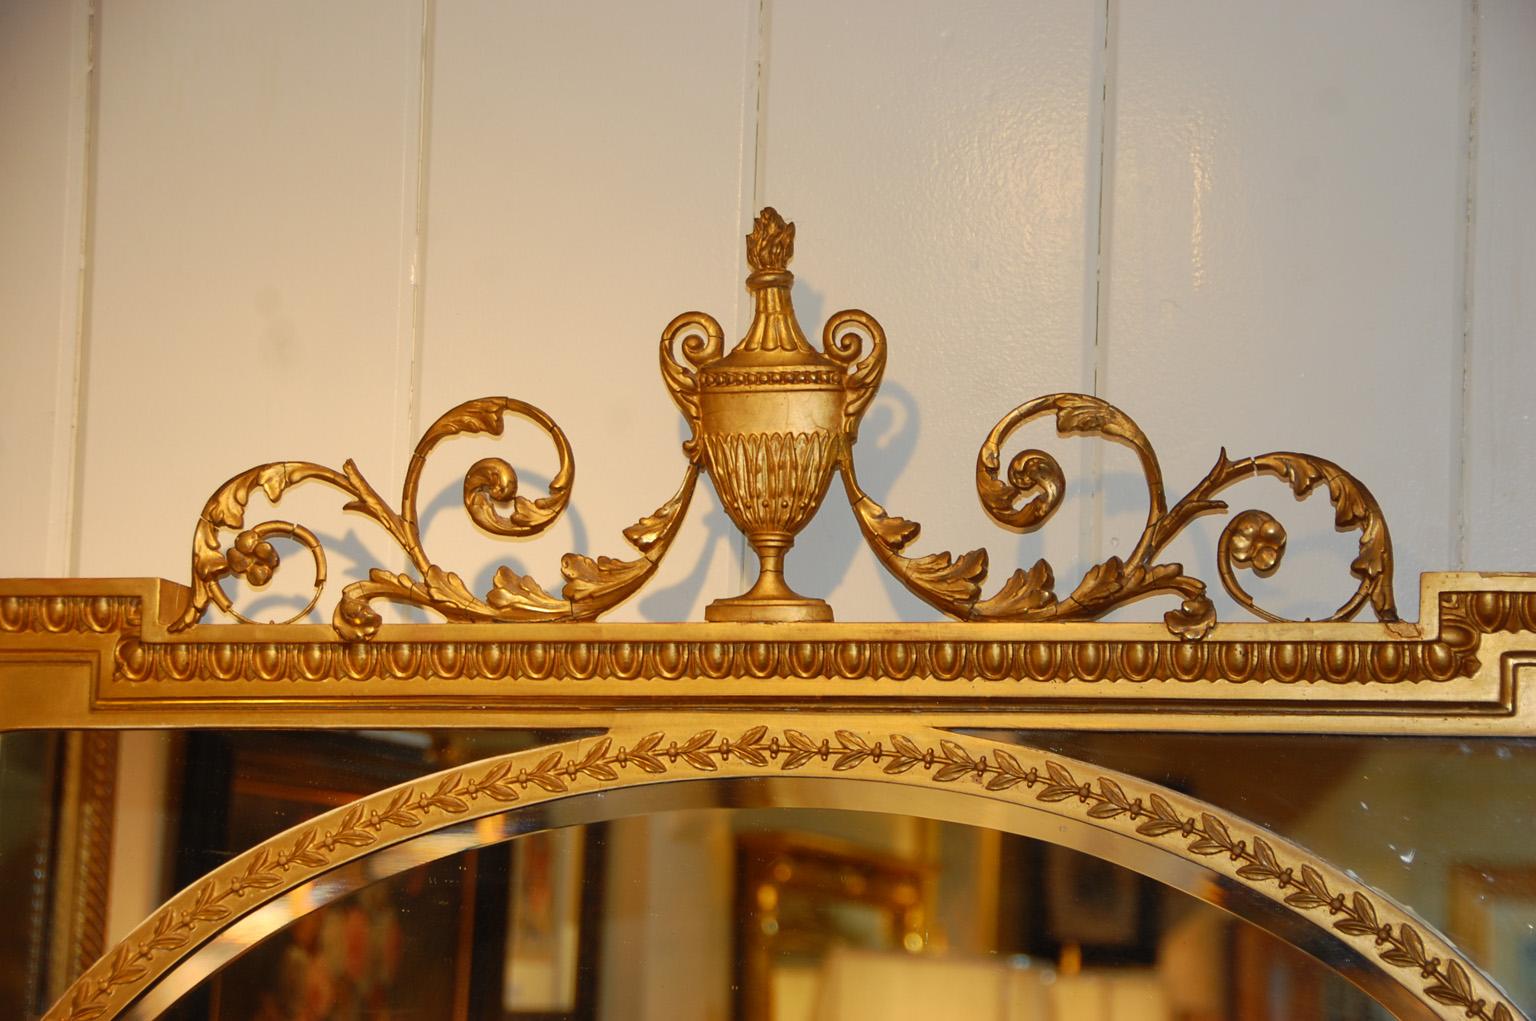 Miroir anglais édouardien en or avec urne et feuilles rampantes surmontant le cadre rectangulaire. Ce miroir inhabituel présente un miroir ovale dans un cadre rectangulaire, créant une scène dans une scène plus grande. Le délicat tracé qui émane de